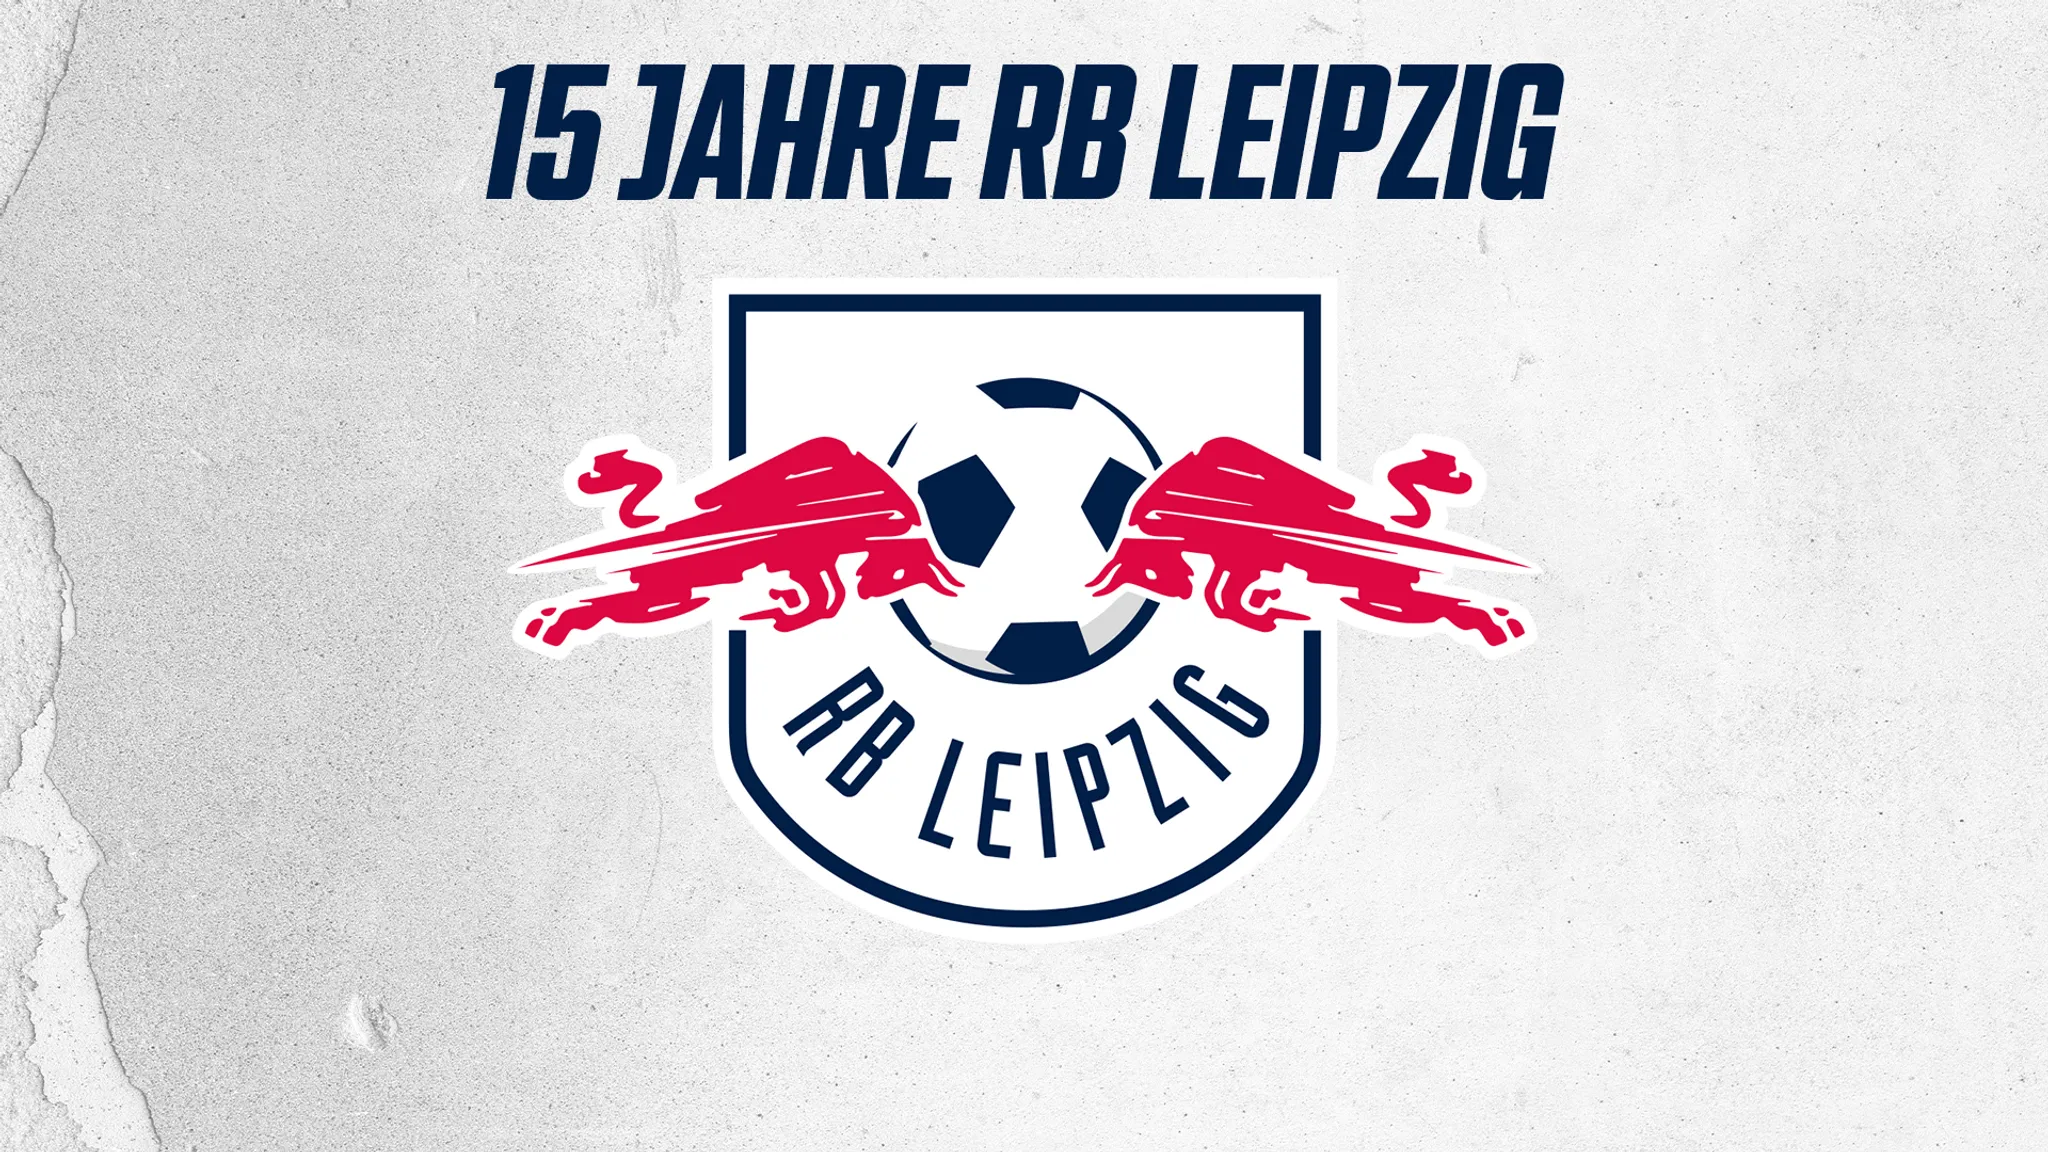 Die Statistiken zu 15 Jahre RB Leipzig.